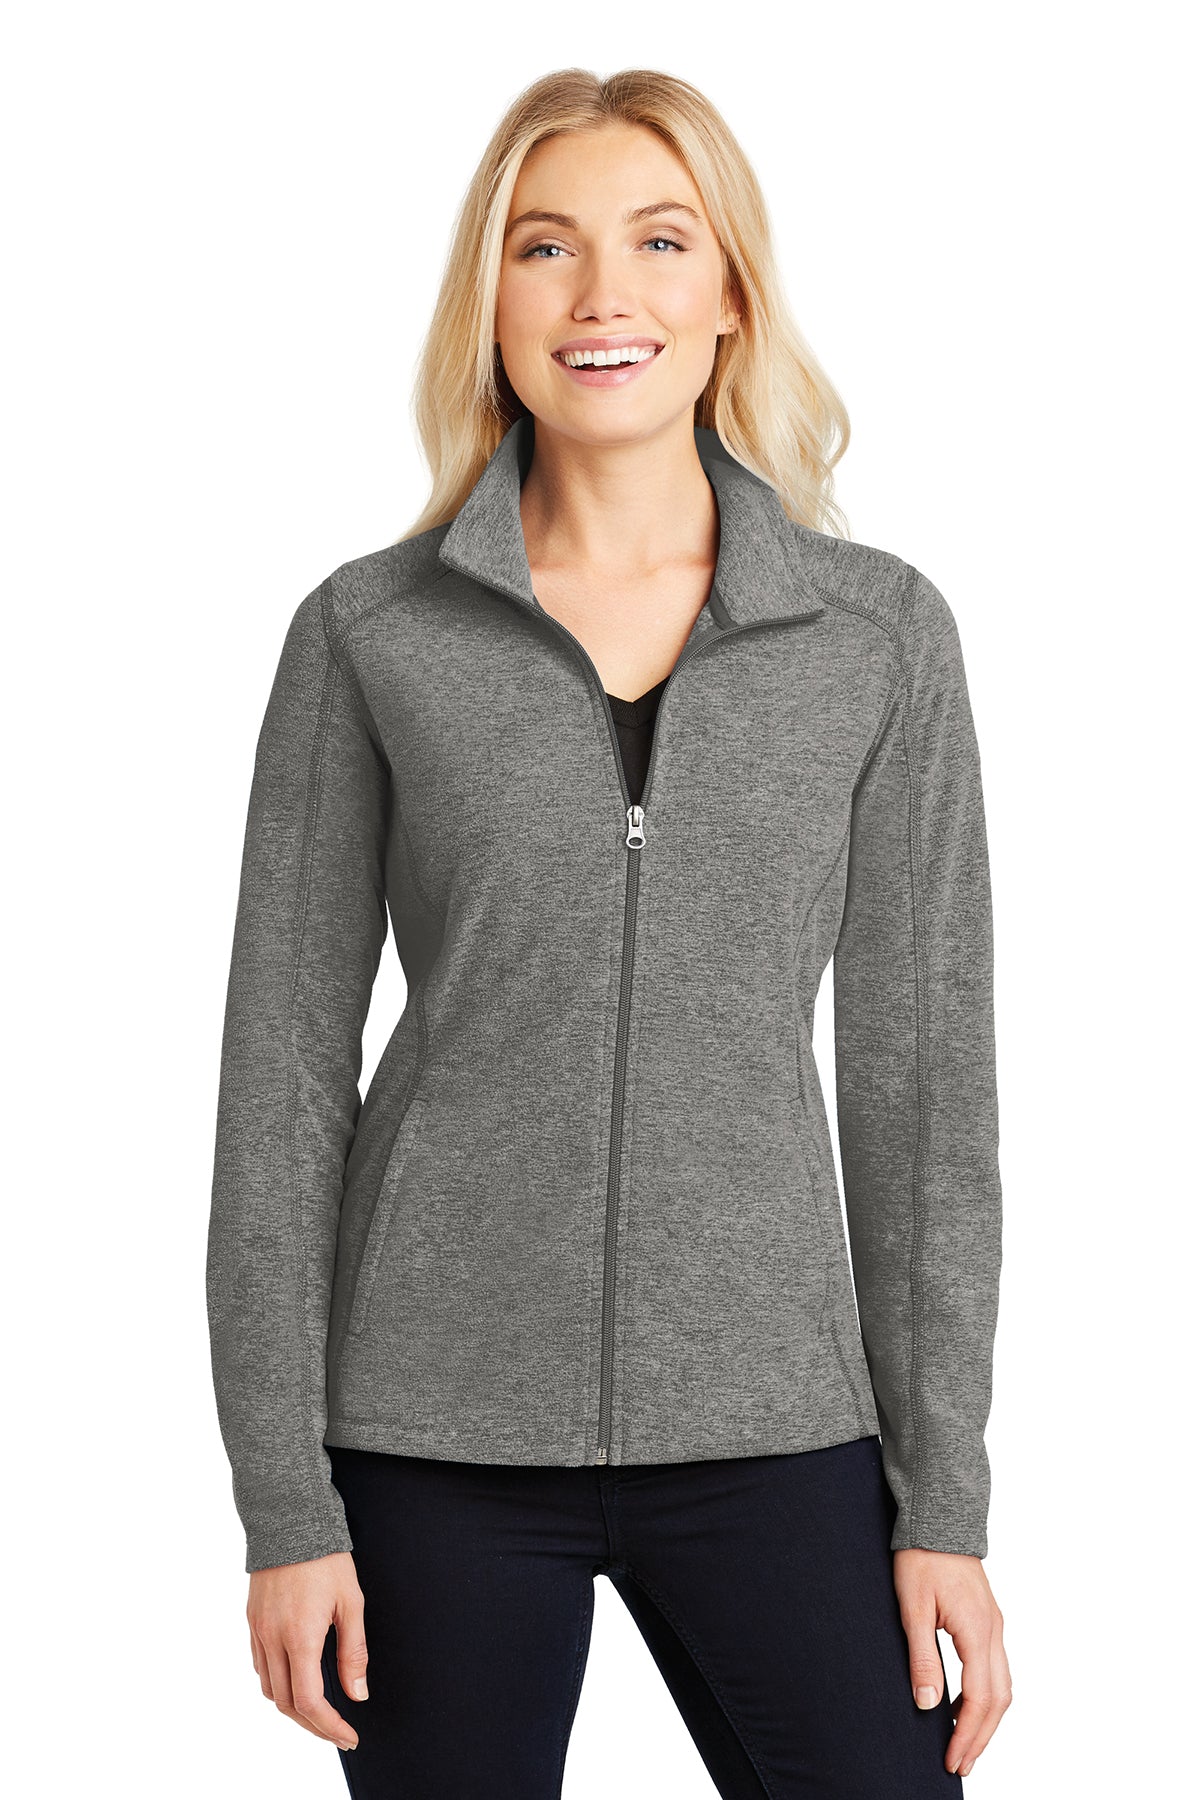 PA L235 Women's Microfleece jacket Pearl Grey